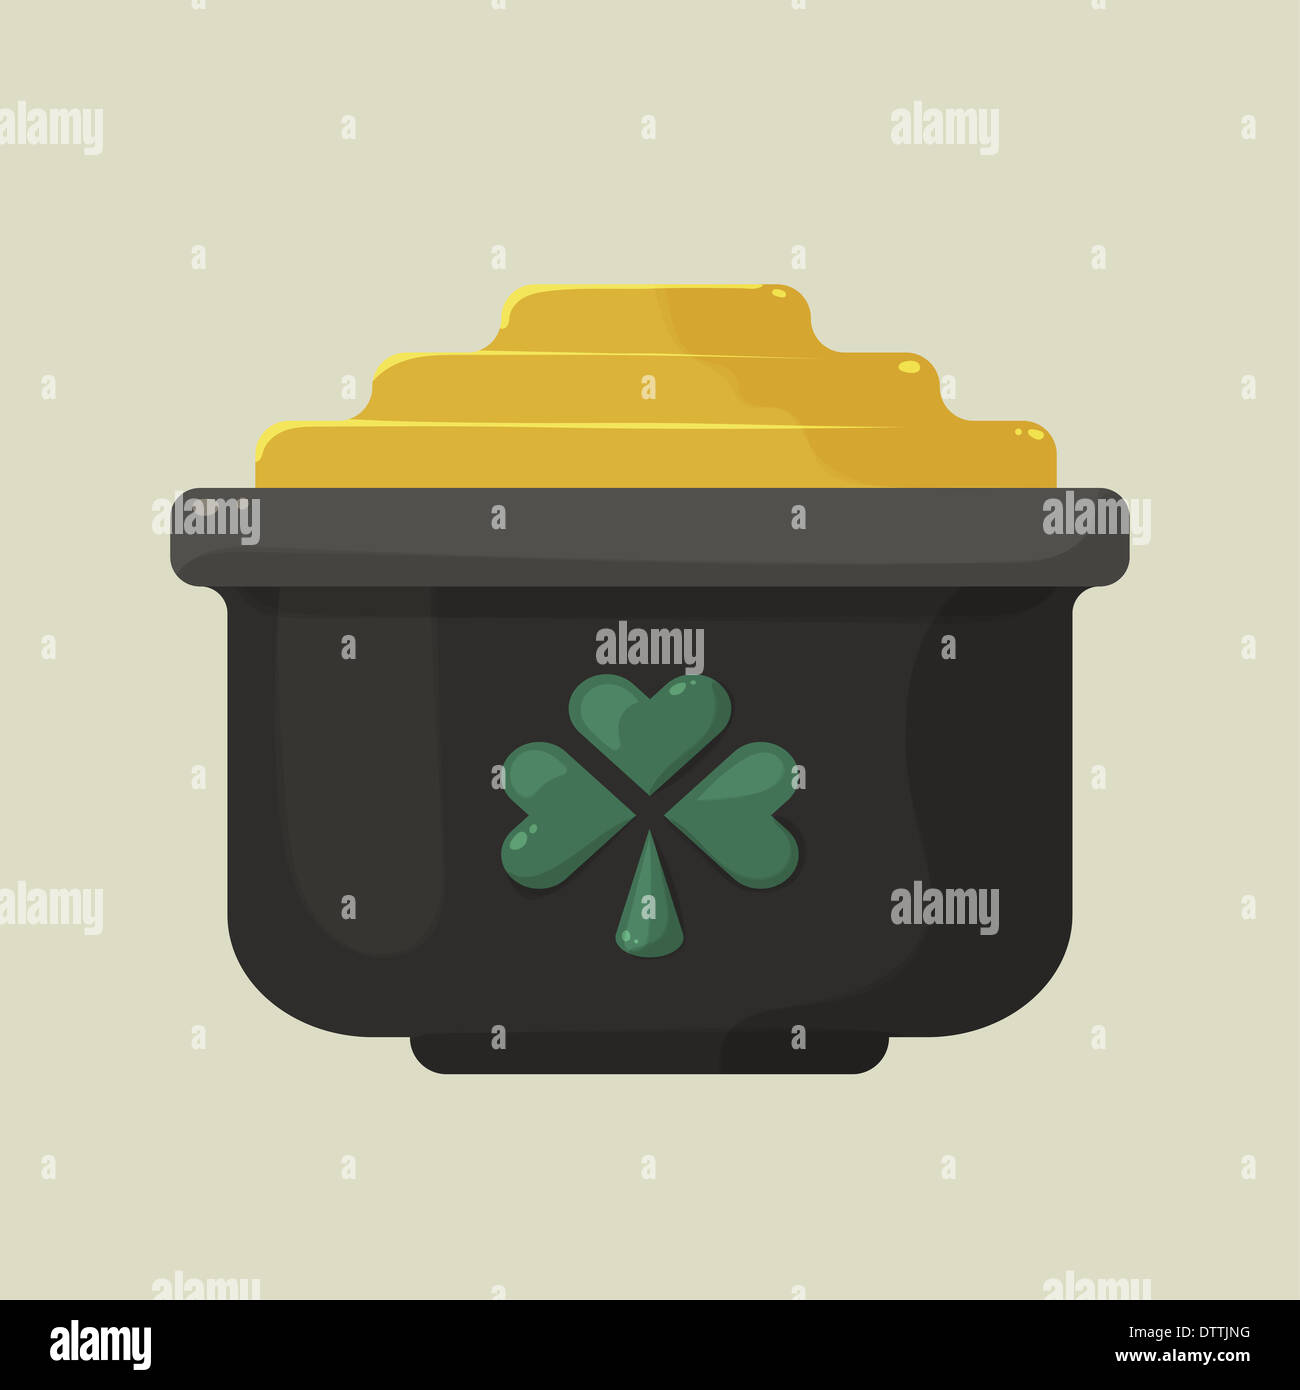 Brillant stylisé cartoon pot d'or avec un trèfle vert Banque D'Images